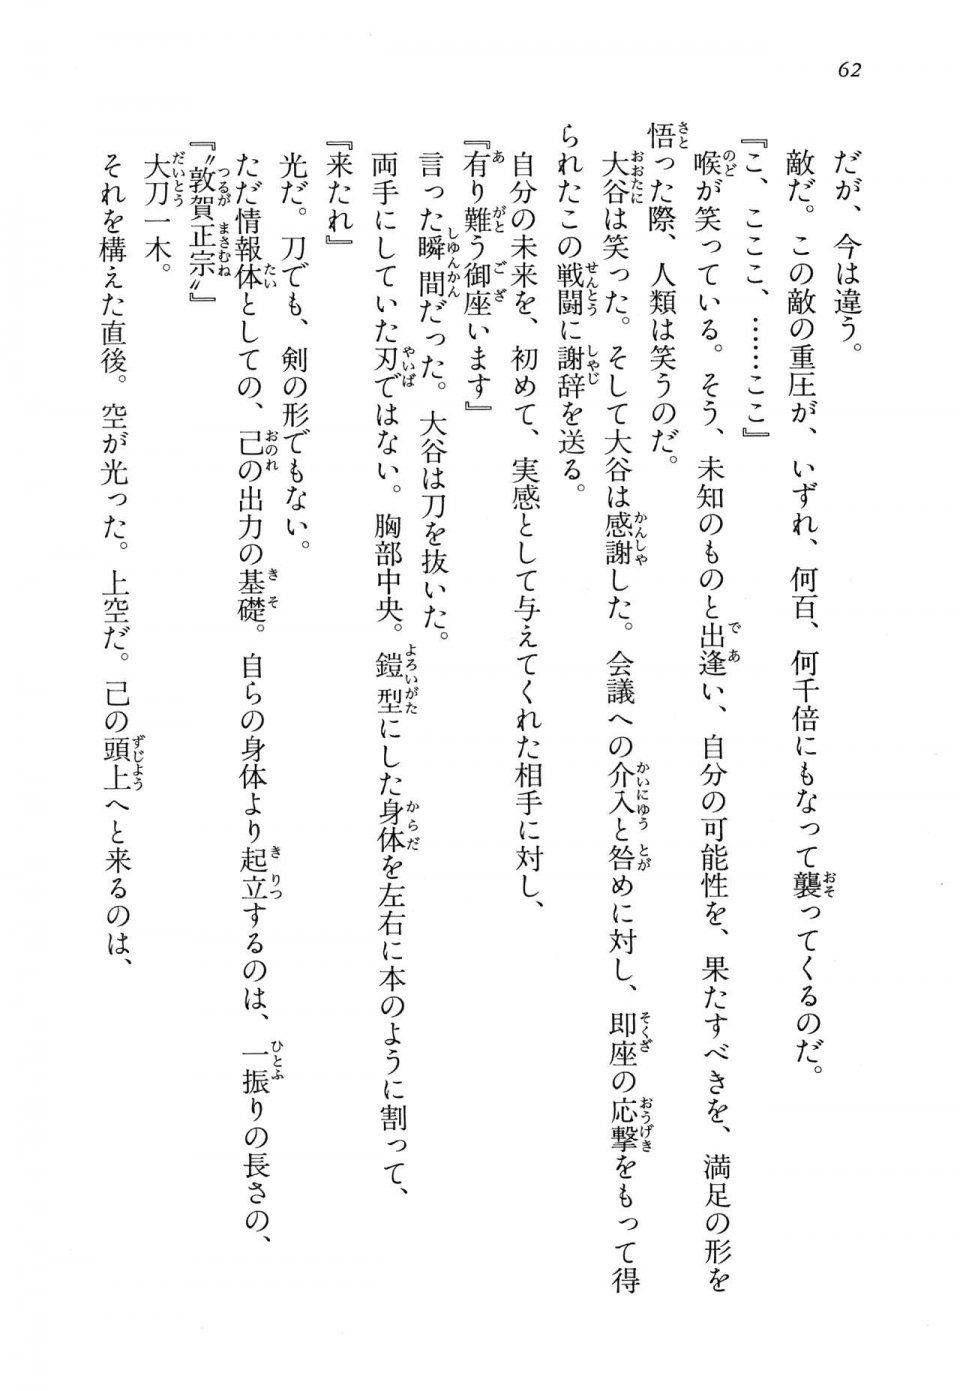 Kyoukai Senjou no Horizon LN Vol 14(6B) - Photo #62